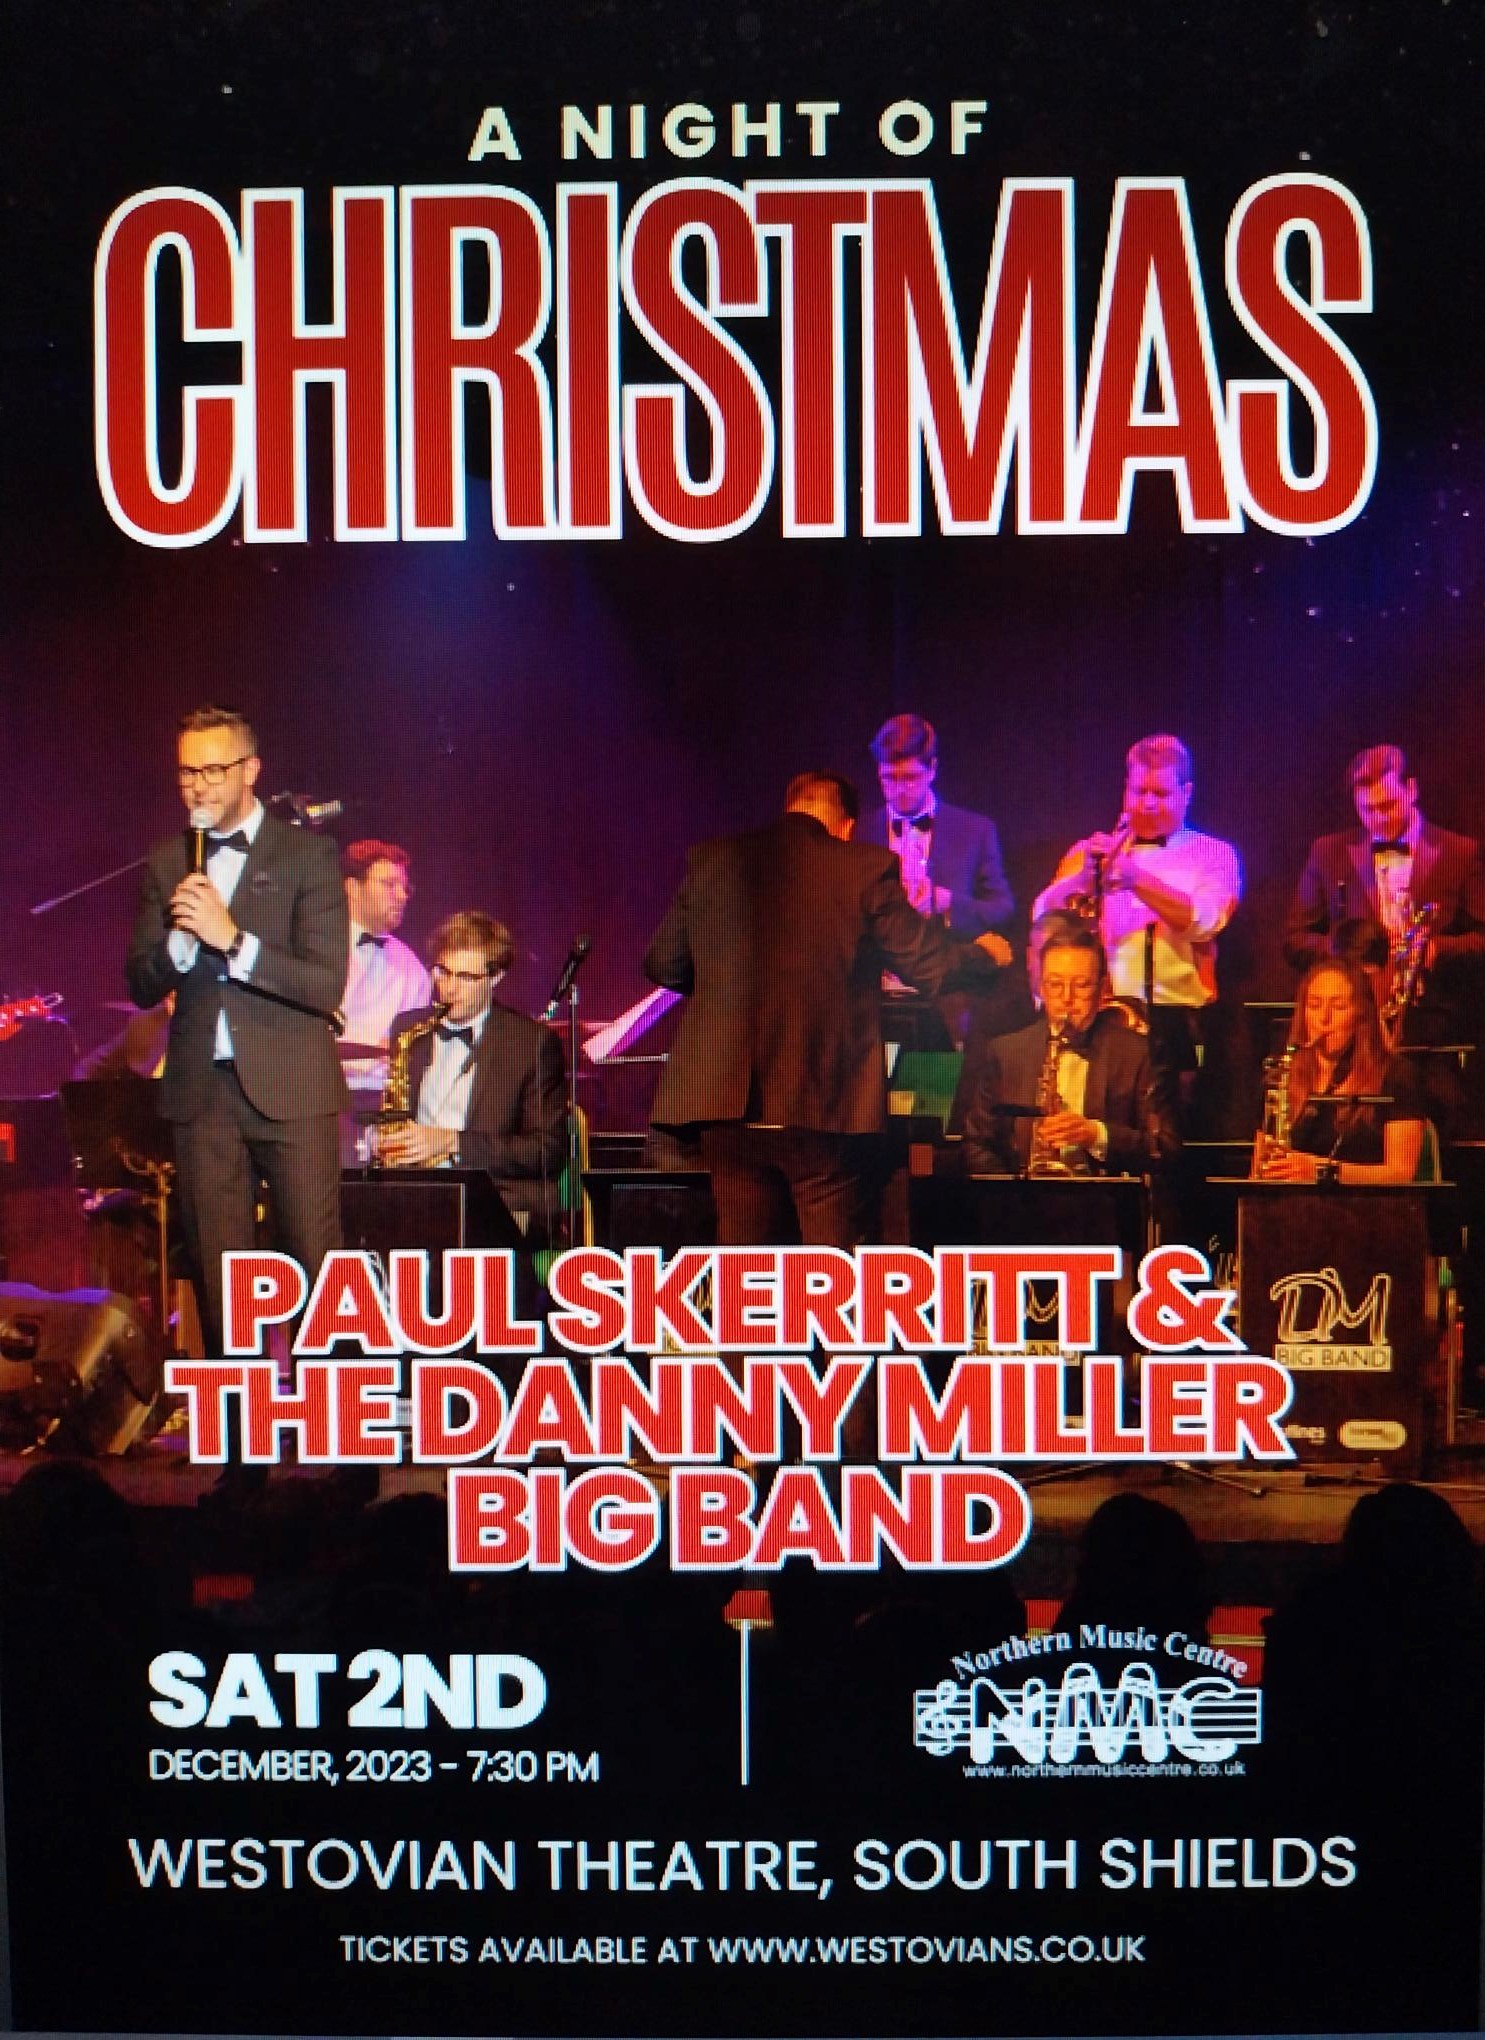 Peter Skerritt and the Danny Miller Big Band